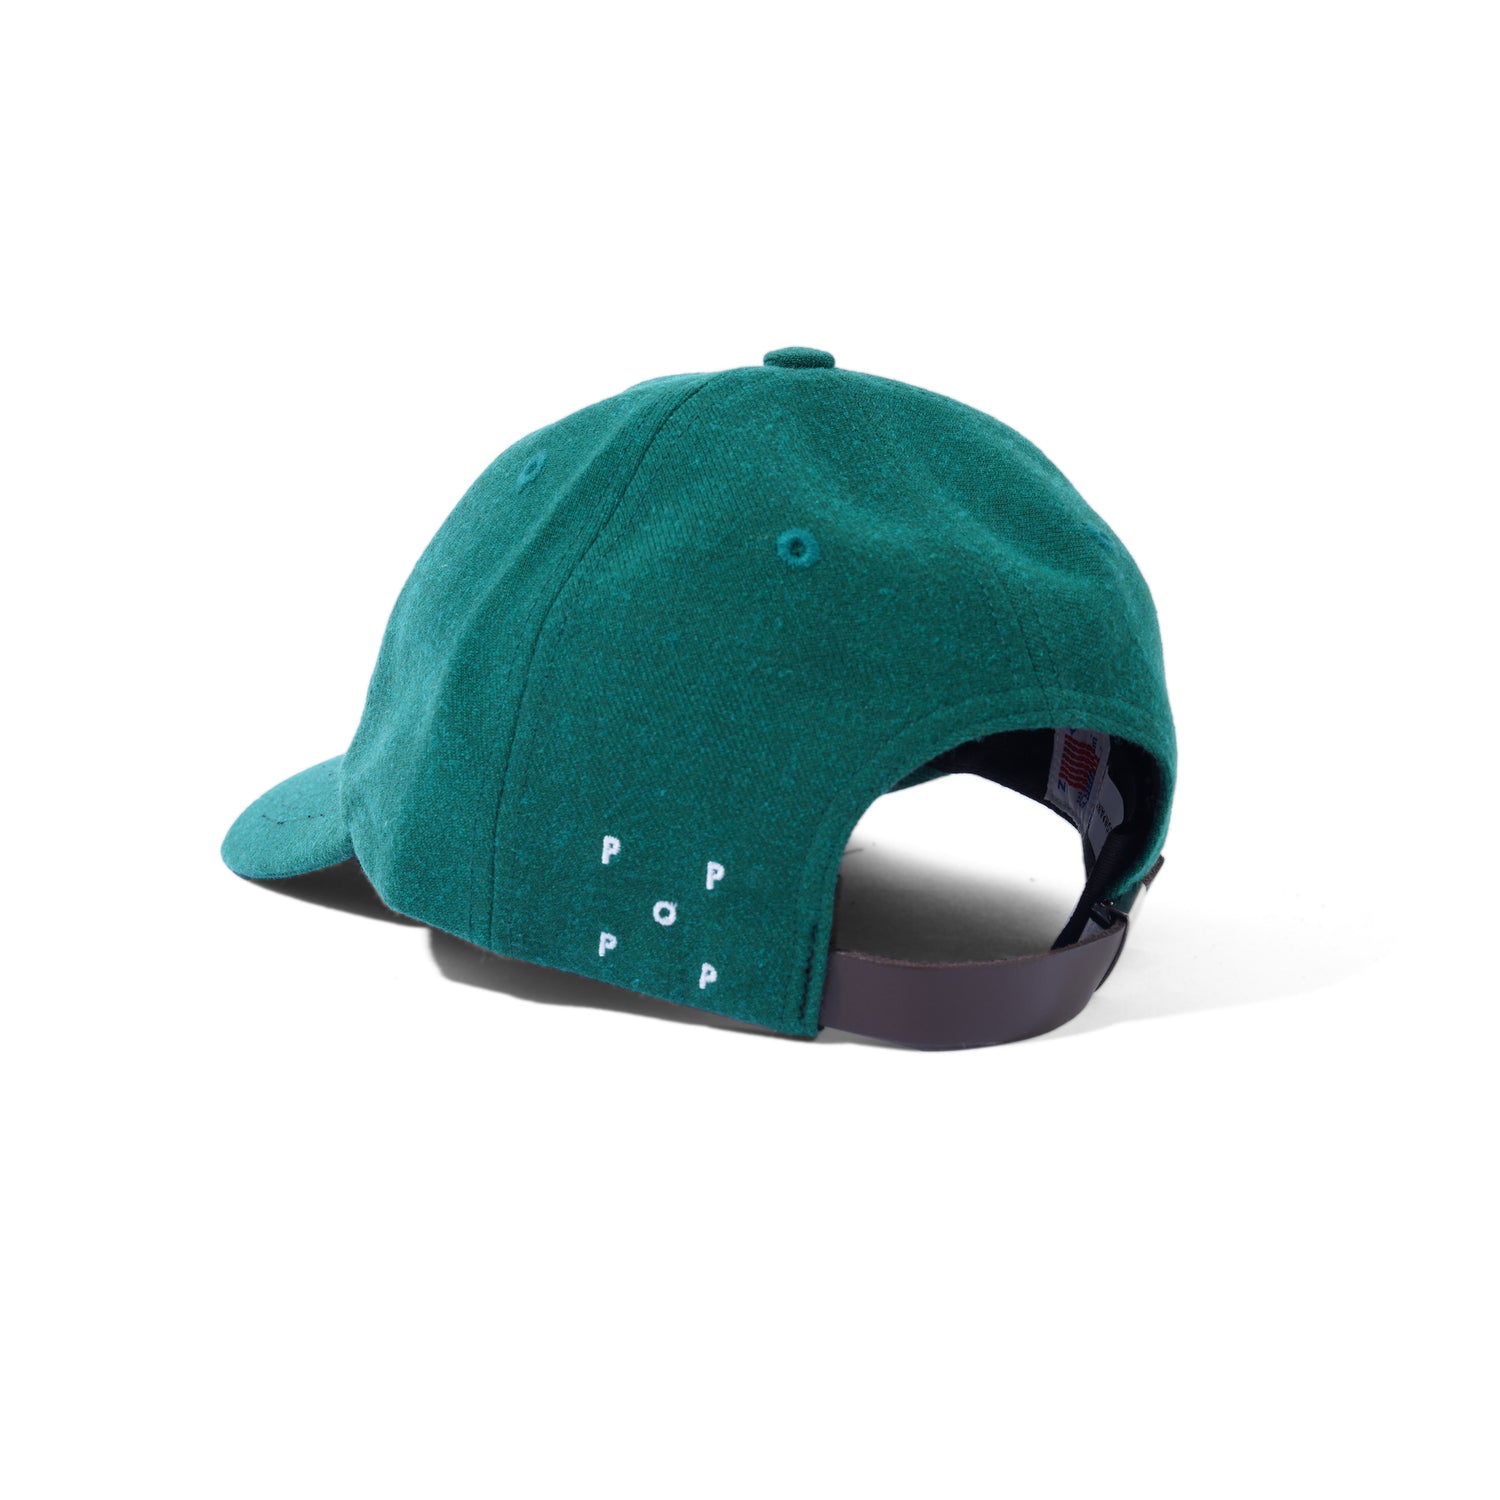 Parra Sixpanel Hat, Dark Green